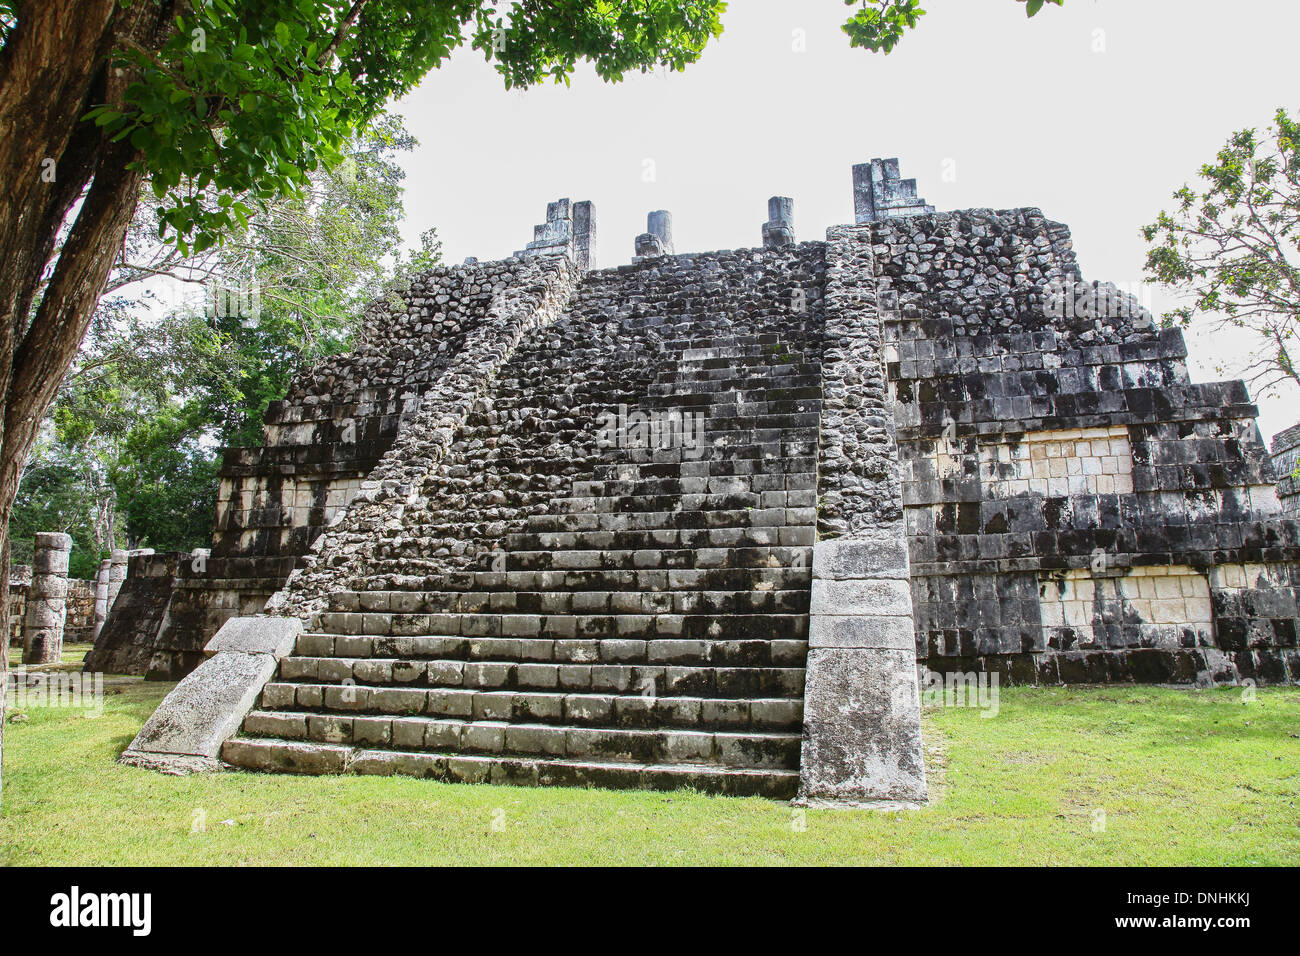 Chichen Itza ruines Mayas sur la péninsule du Yucatan Mexique Amérique du Nord Banque D'Images